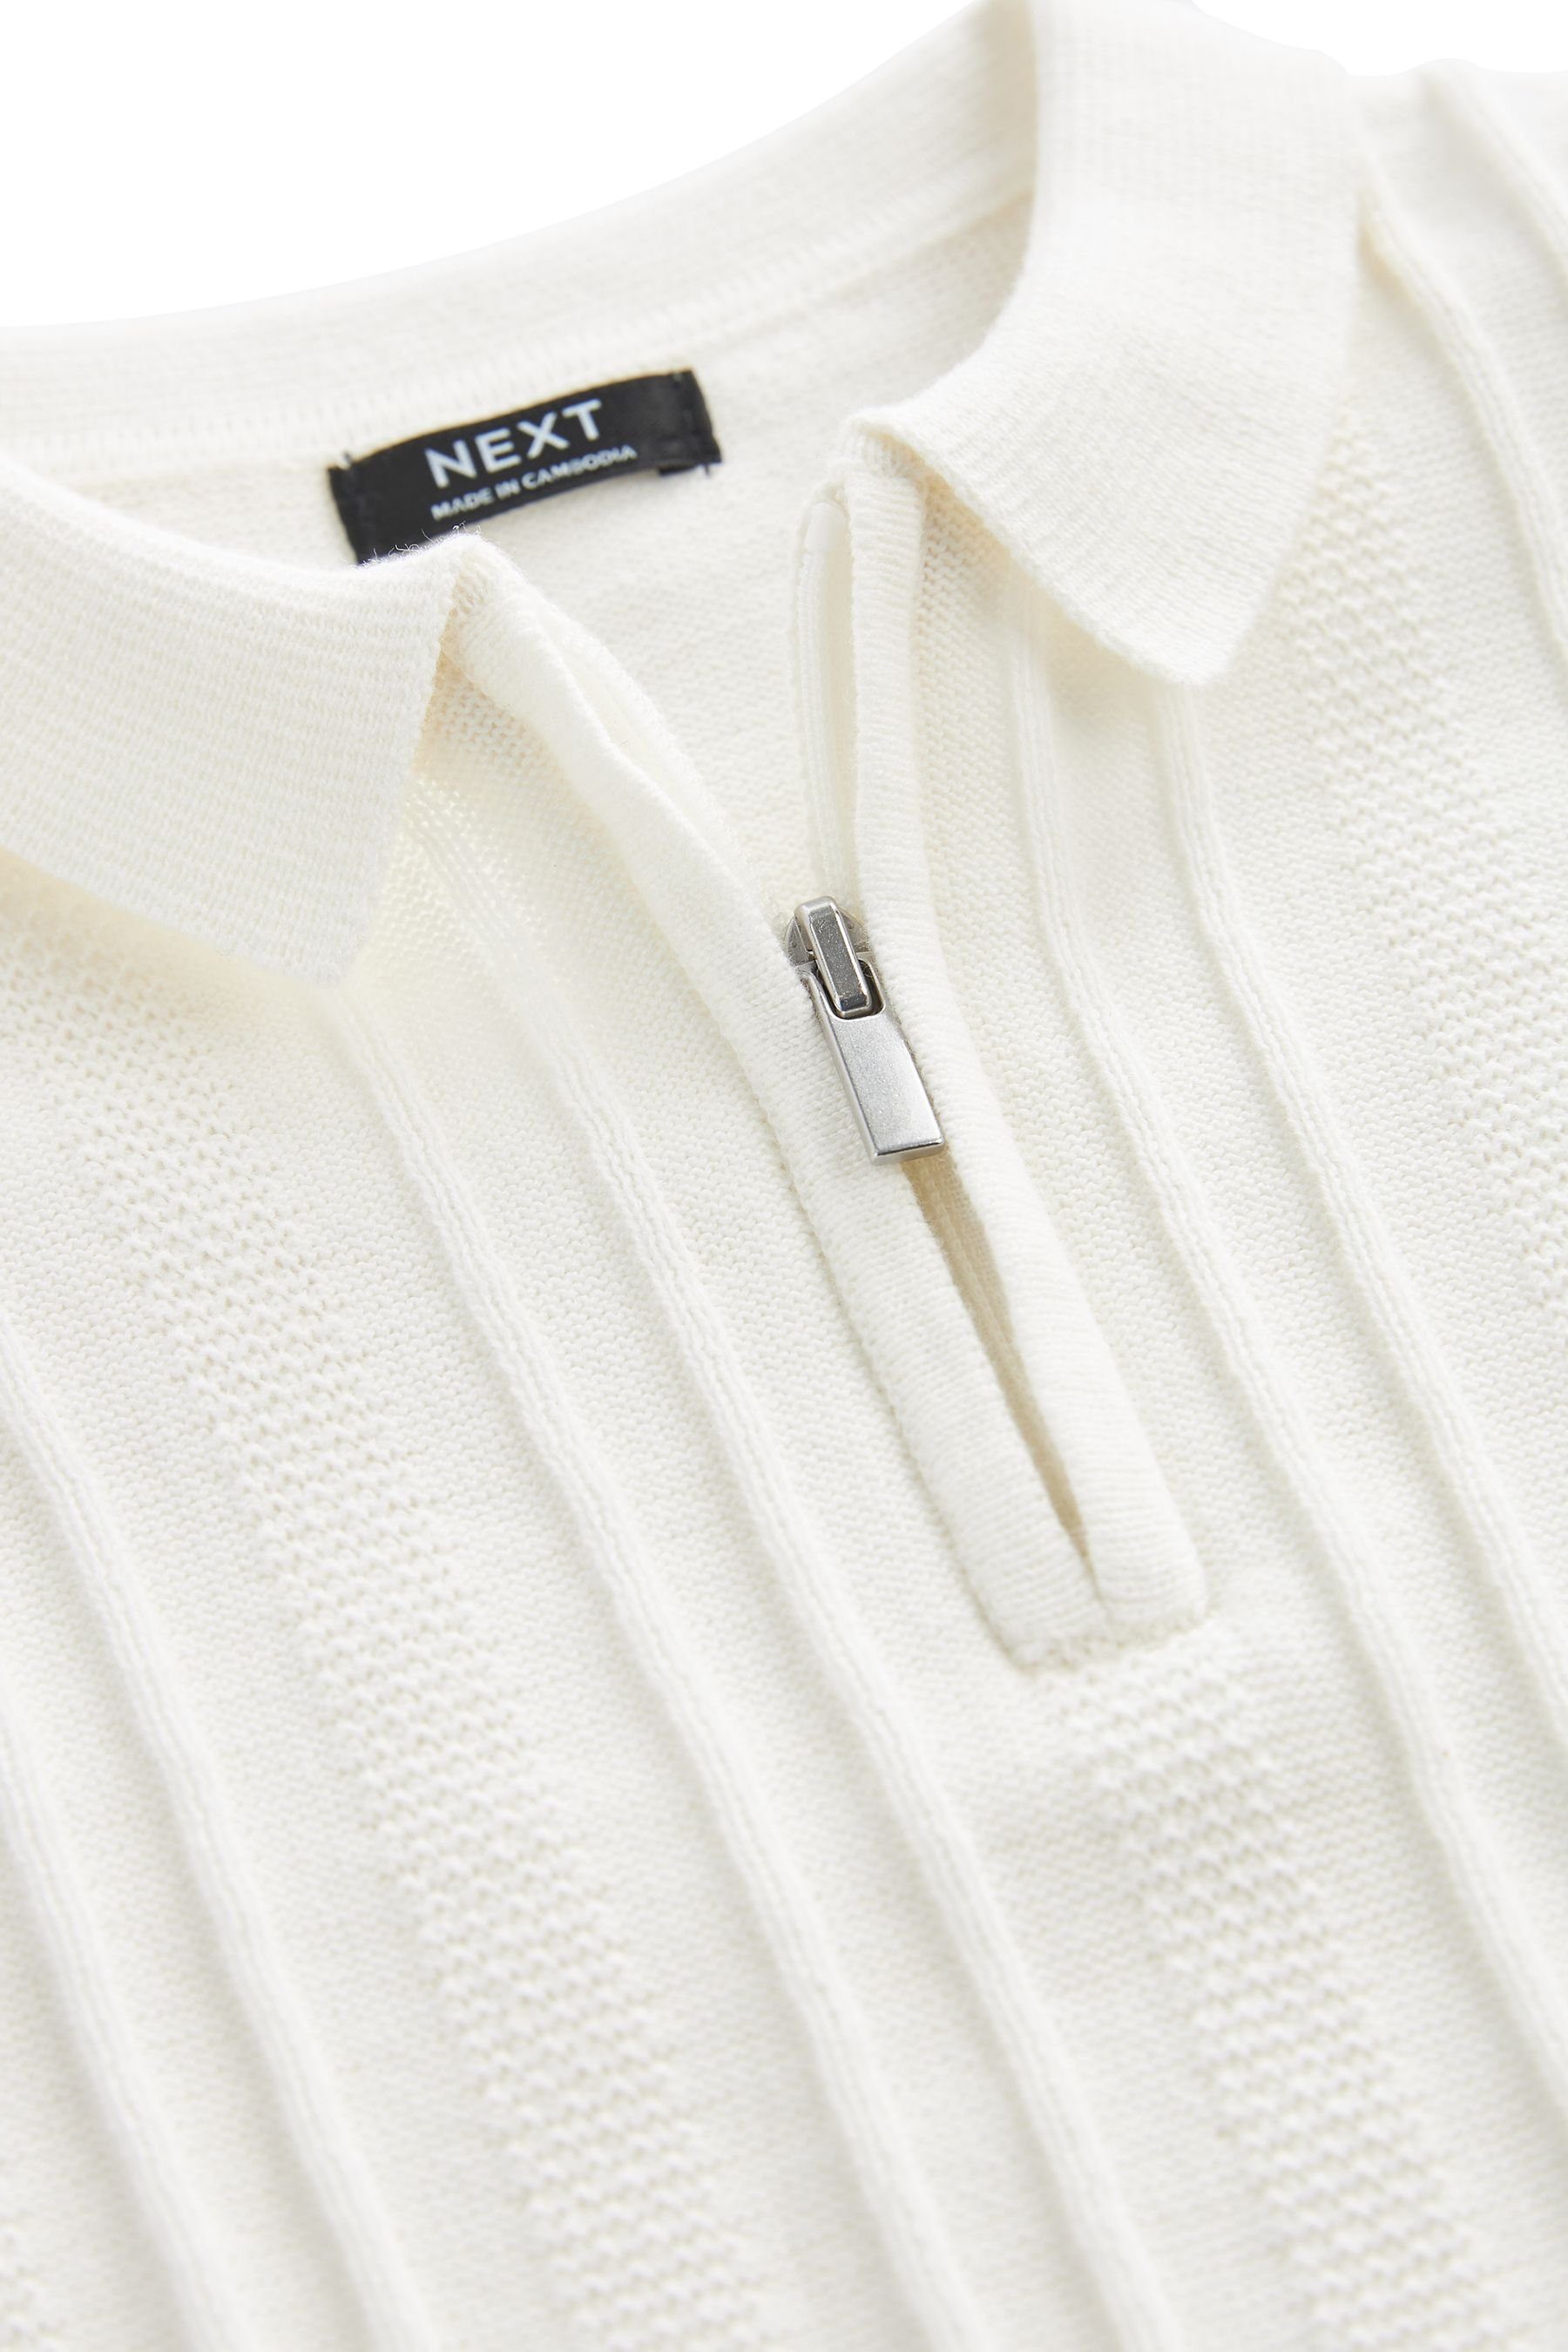 Kurzarm-Polohemd aus White (1-tlg) mit Strick Reißverschluss Next Polokragenpullover